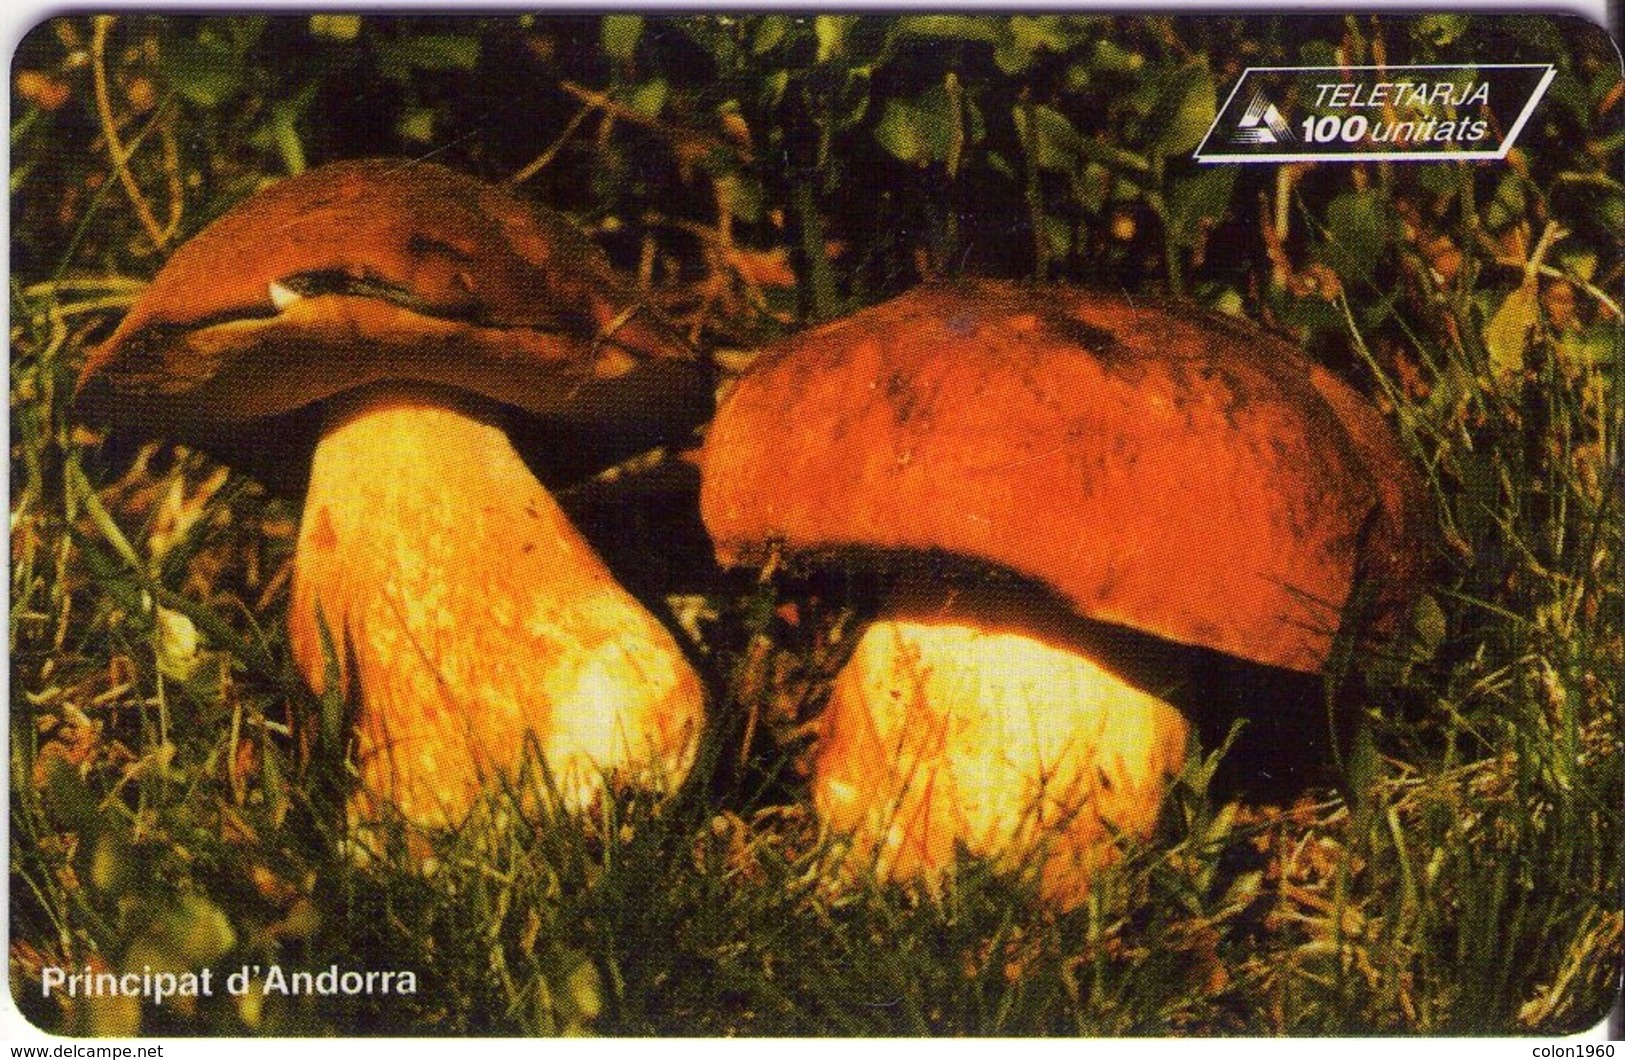 ANDORRA. Setas - CHAMPIGNONS - FUNGHI. Mushrooms - Ceps. 1996-10. 10000 Ex. AD-STA-0061. (049) - Andorra